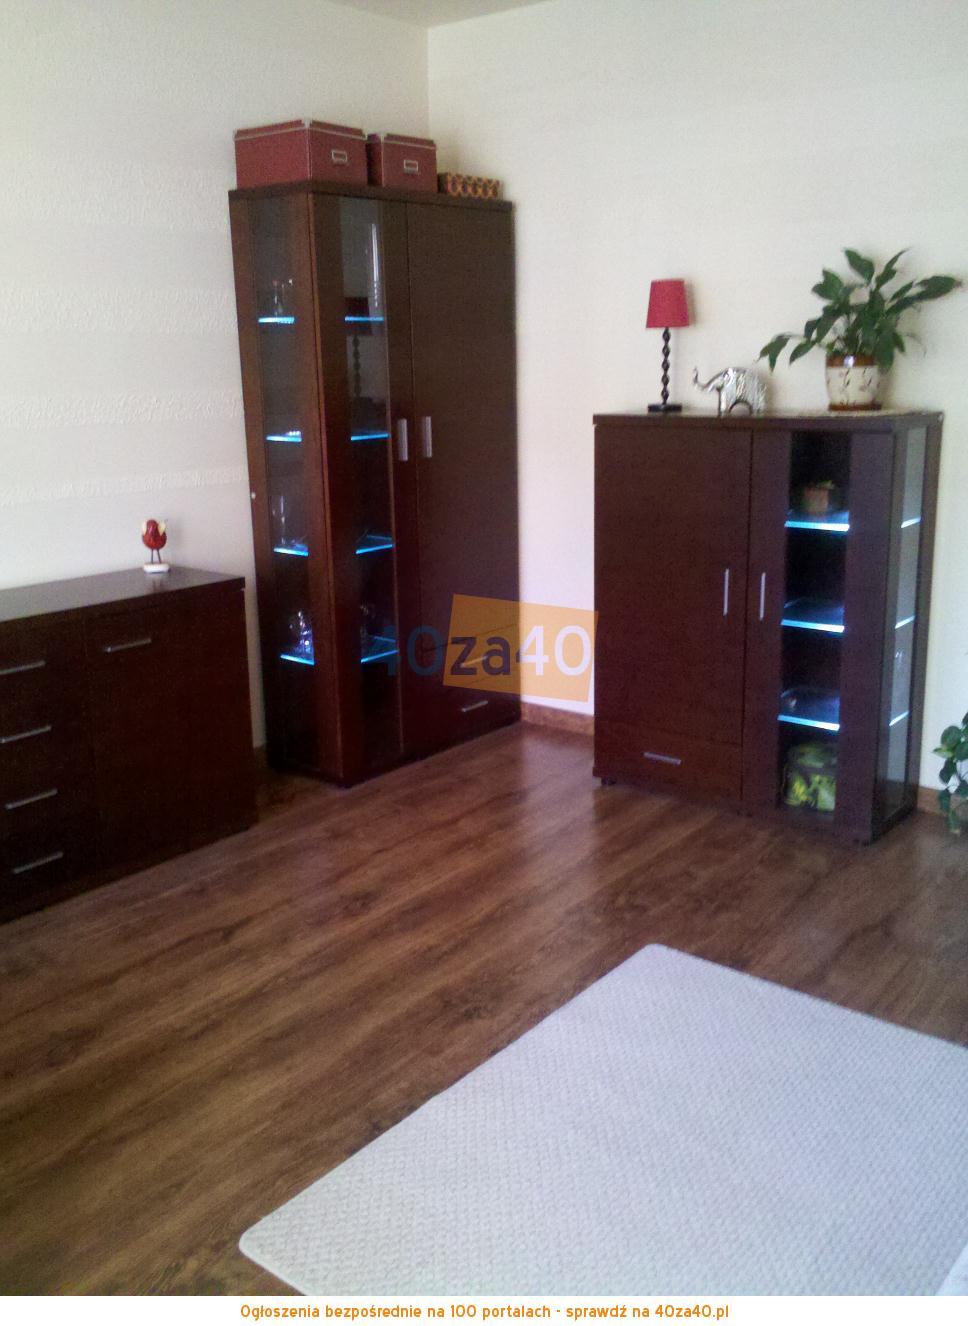 Mieszkanie do wynajęcia, pokoje: 2, cena: 1 300,00 PLN, Gdynia, kontakt: 607974938, 609744899